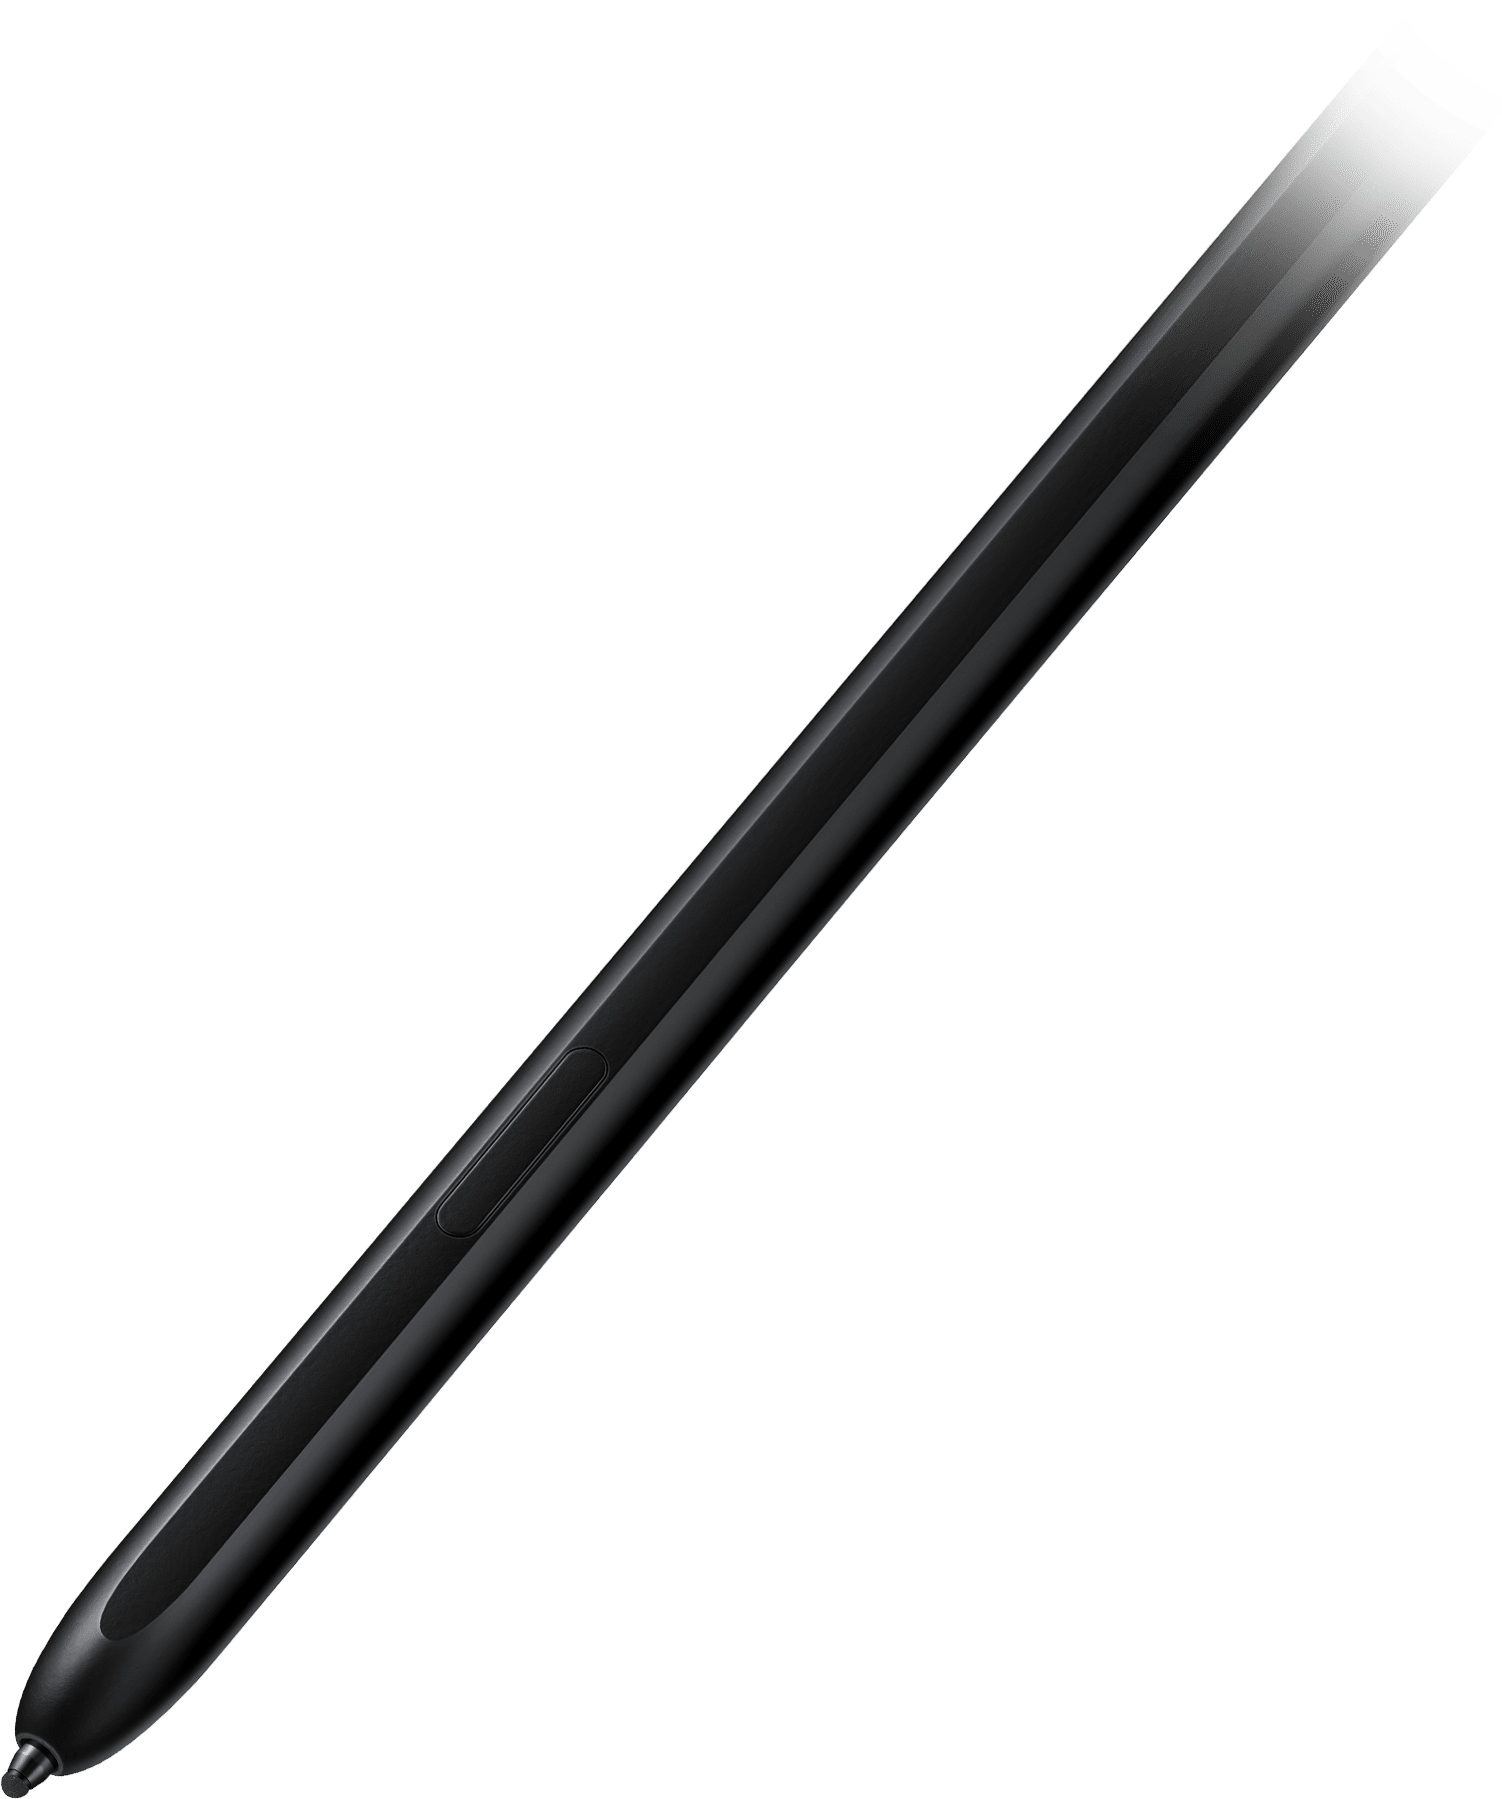 S Pen Fold Edition vẽ một đường màu đen ngang màn hình.